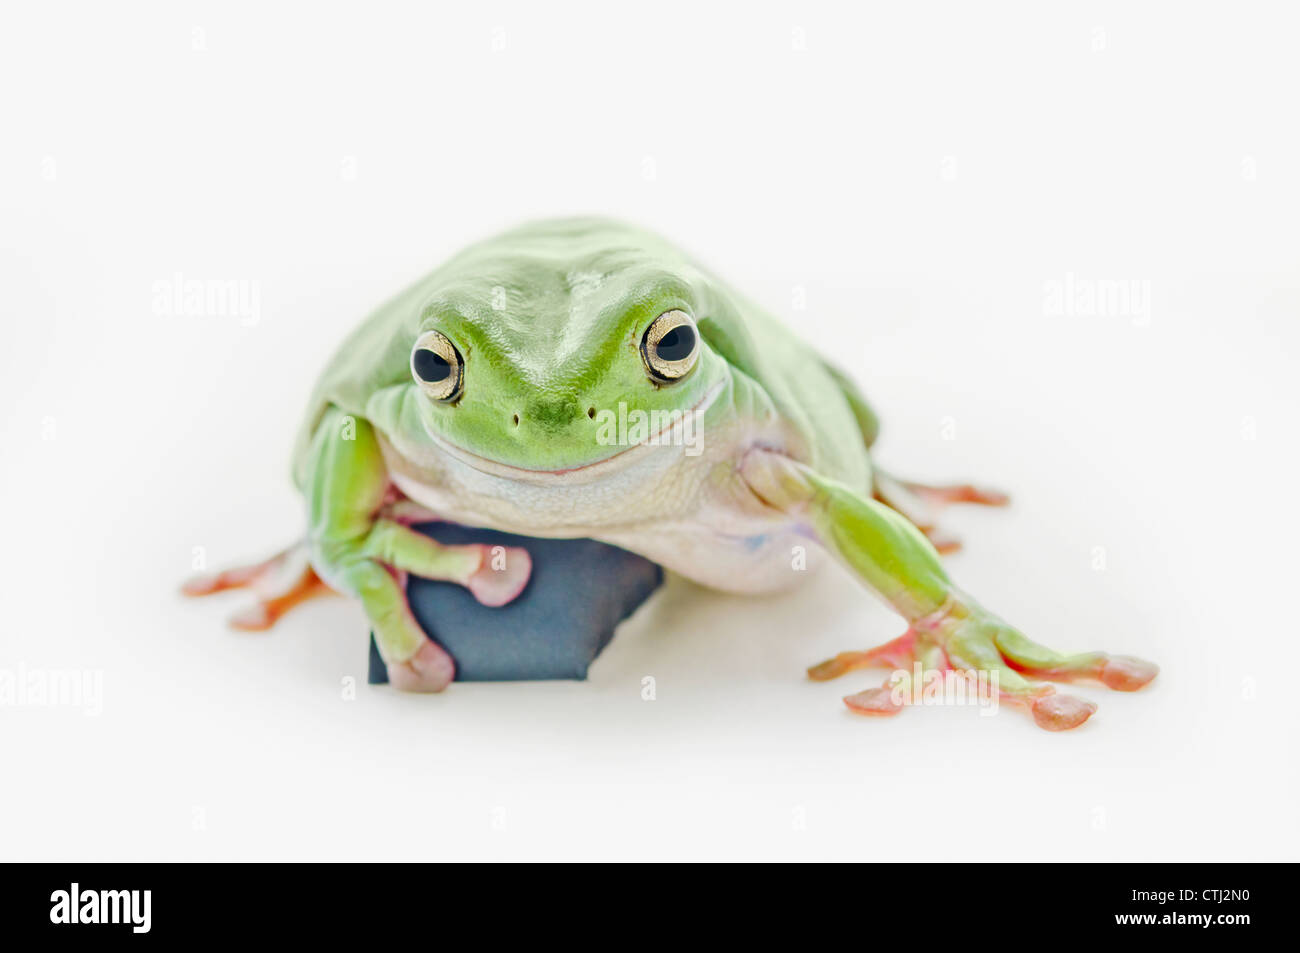 Dicken grünen Laubfrosch auf weißem Hintergrund Stockfoto